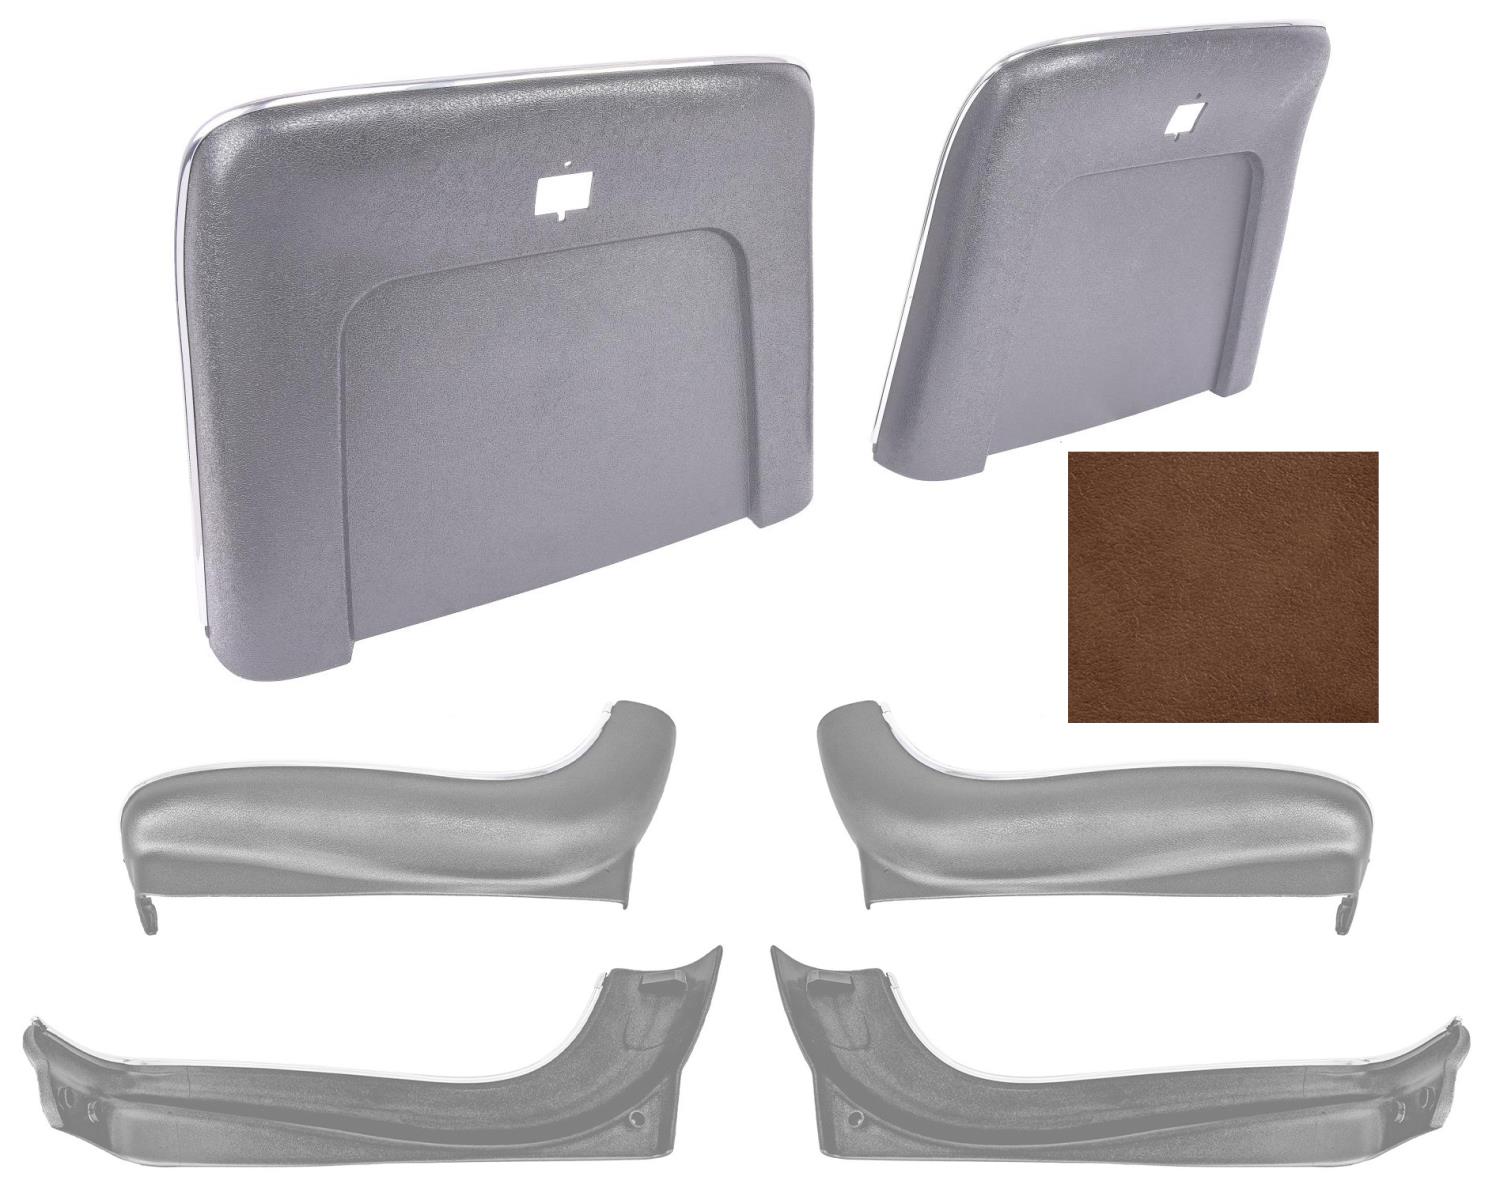 Seat Backs & Sides Kit Fits Select 1969-1972 GM Models [Dark Saddle]